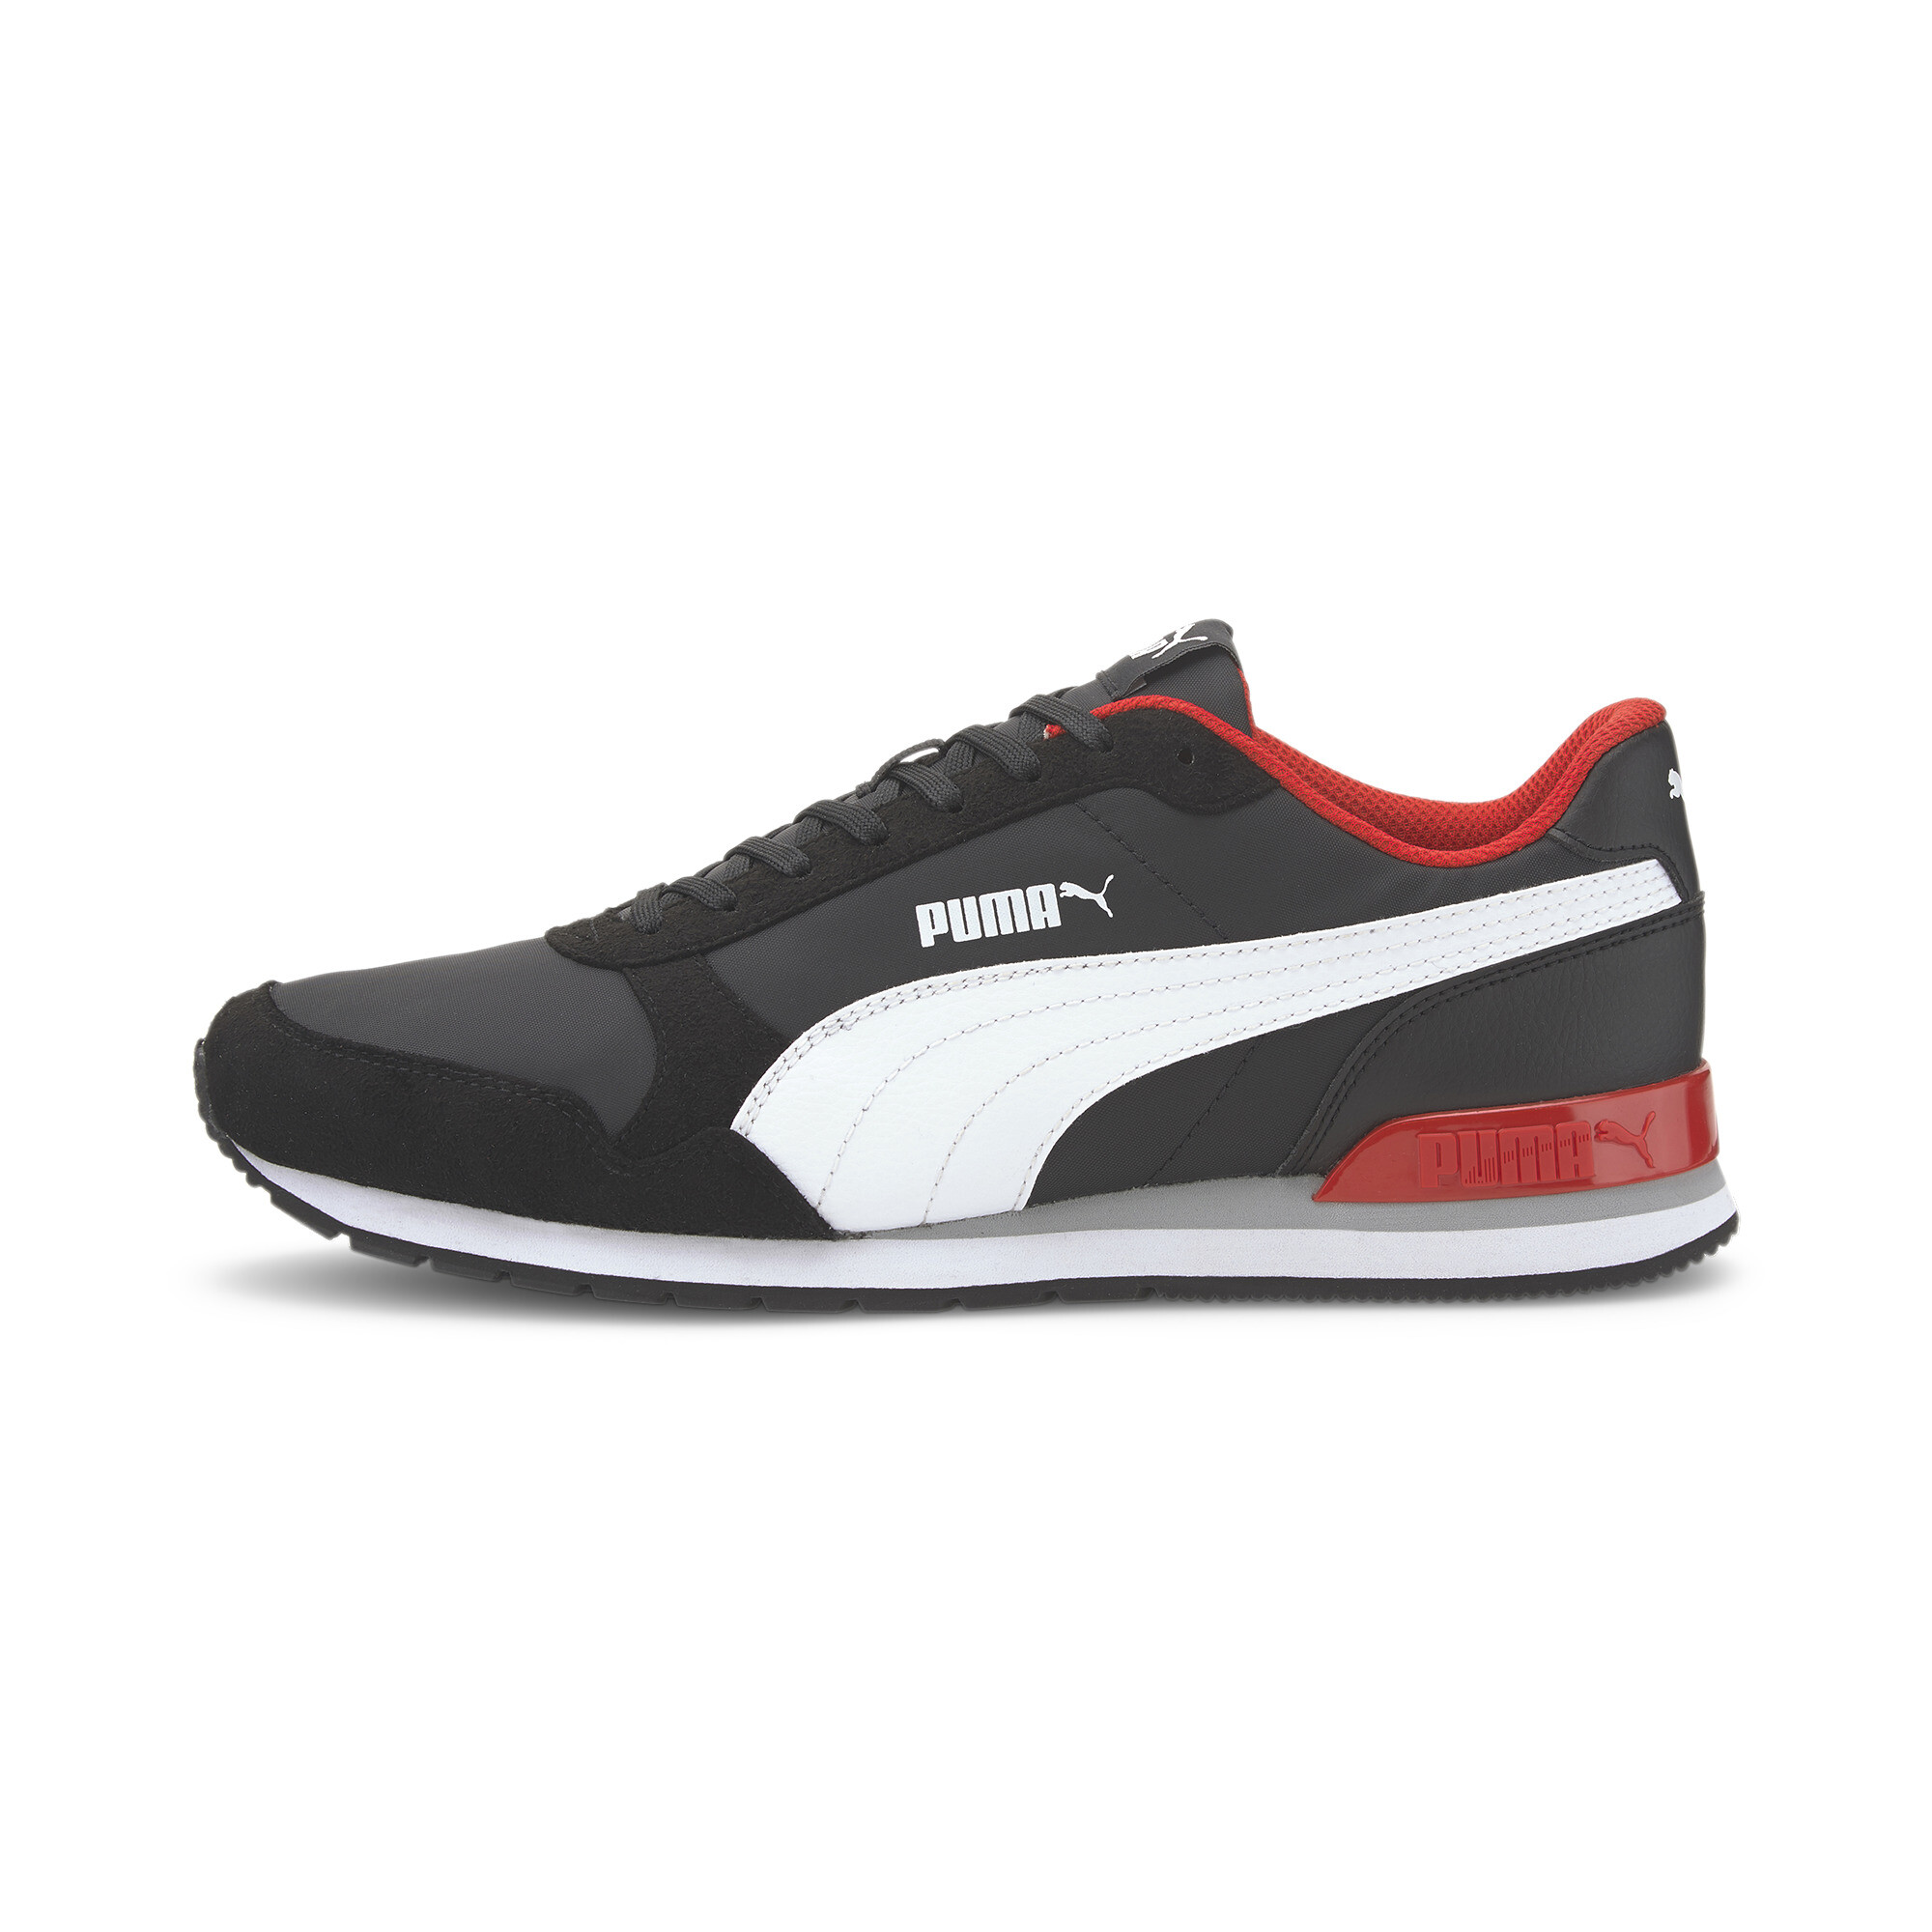 PUMA Men's ST Runner v2 Sneakers | eBay